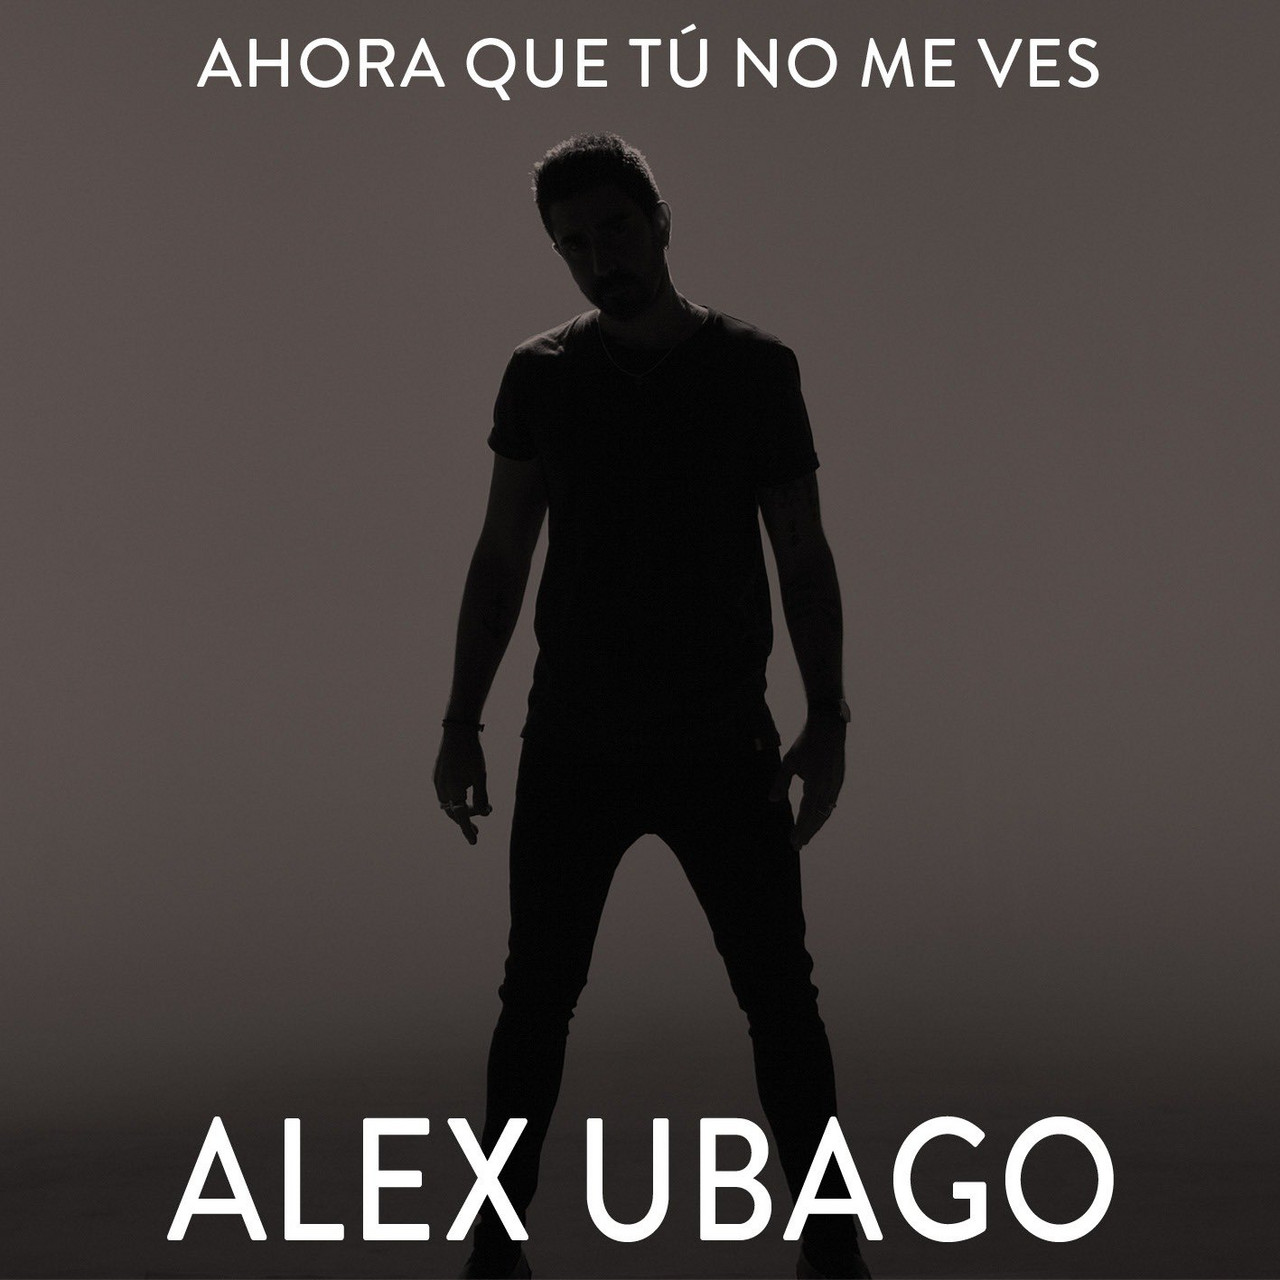 "Ahora que tú no me ves", el nuevo single de Álex Ubago